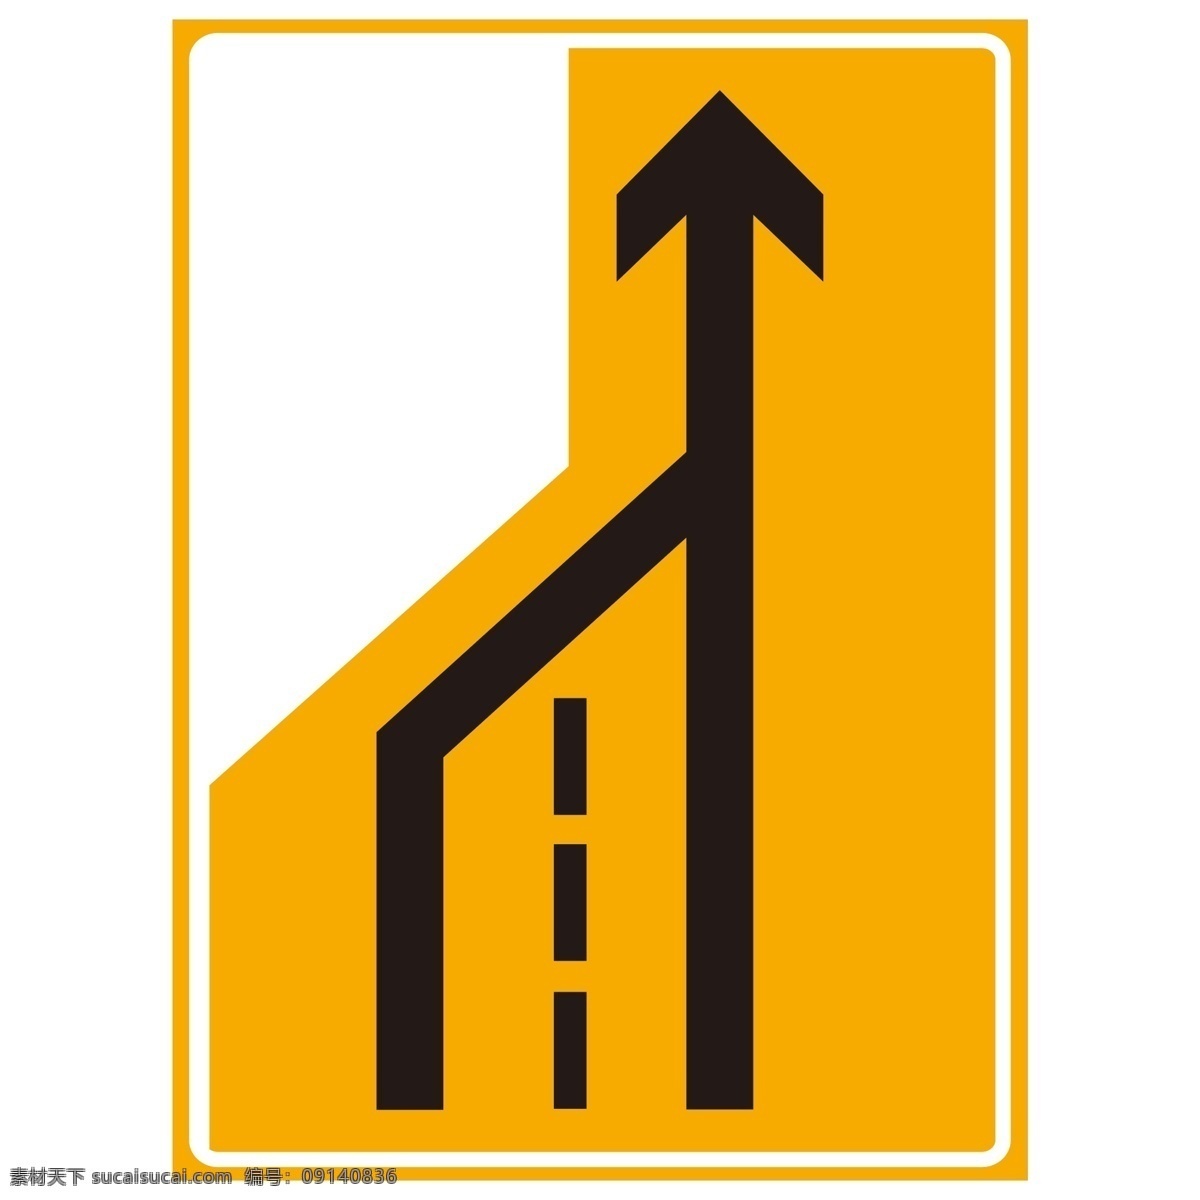 车道变少 道路施工 施工标志 高速施工 省道施工 标志图标 公共标识标志